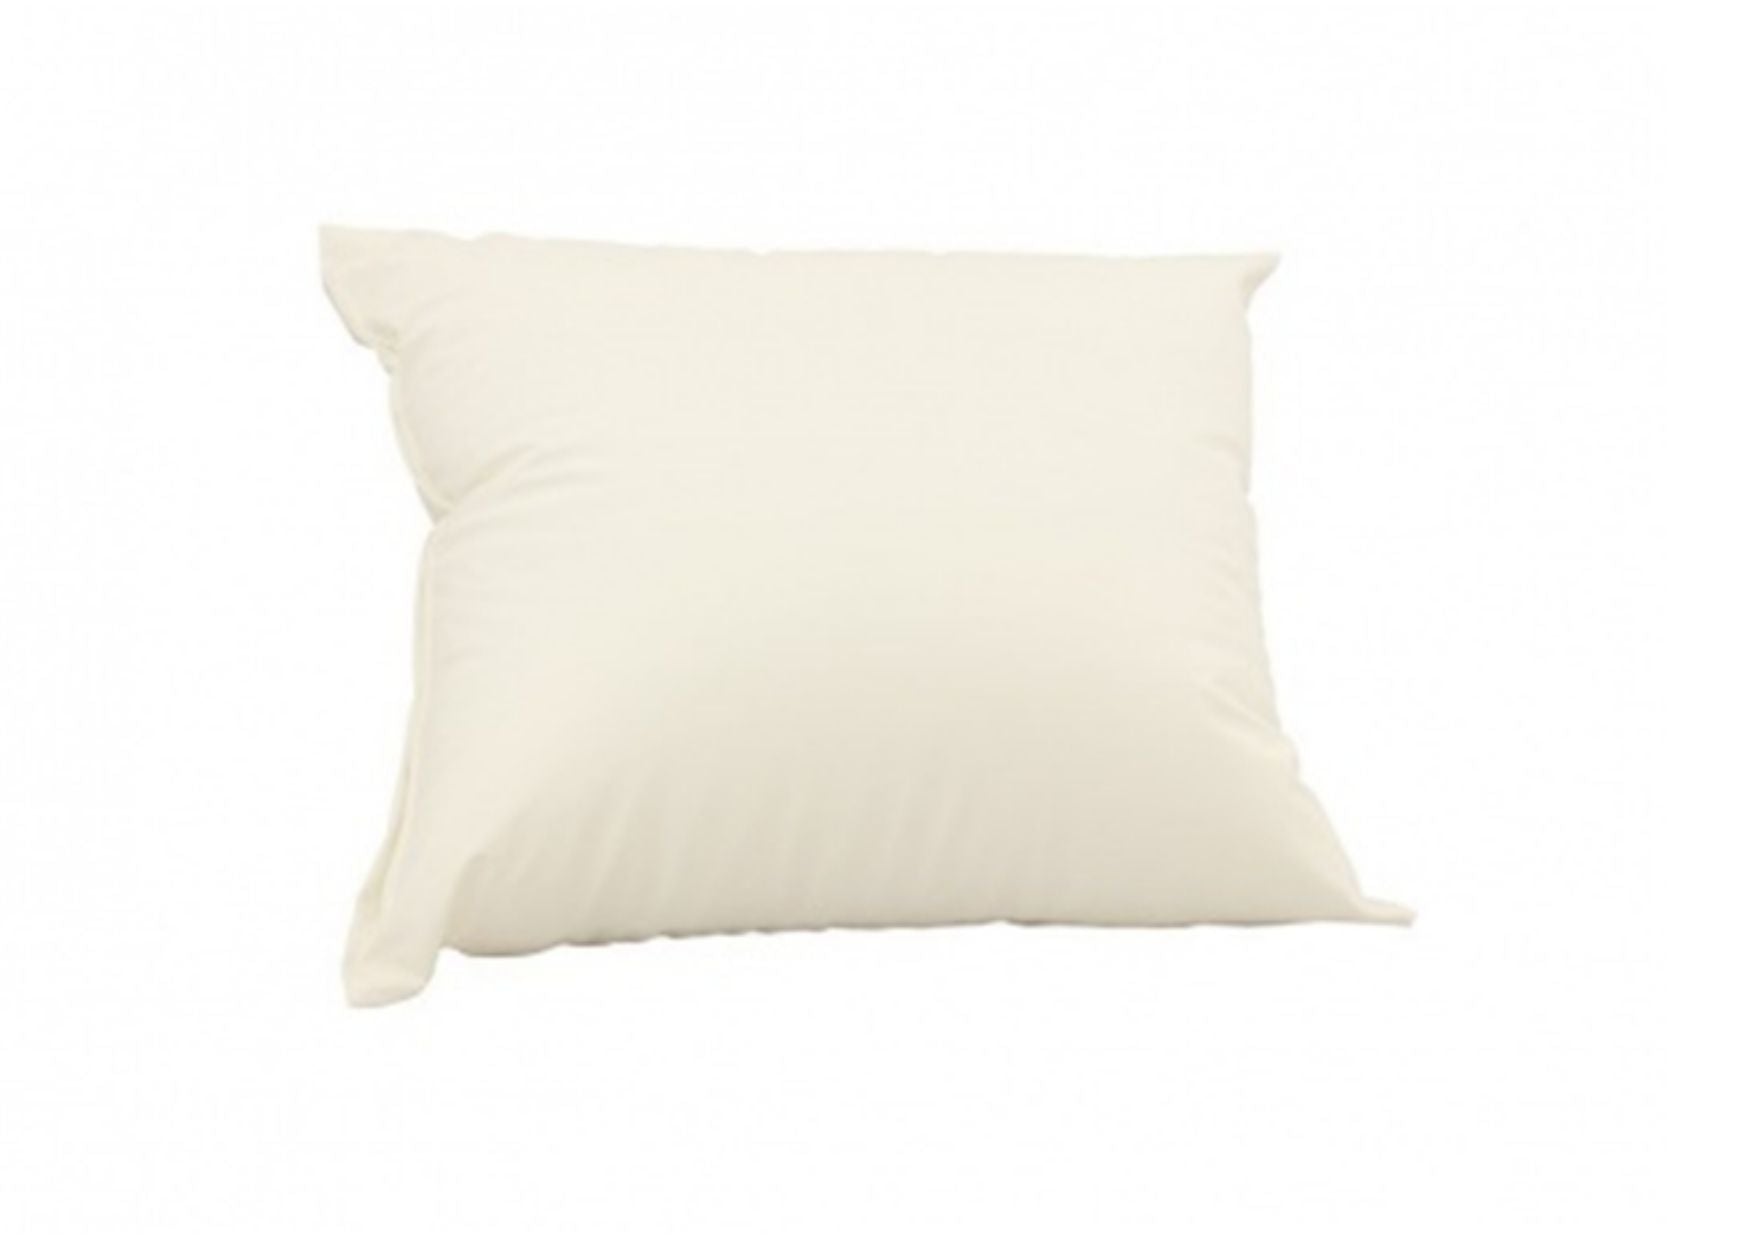 Washable pillow 60 x 70 cm